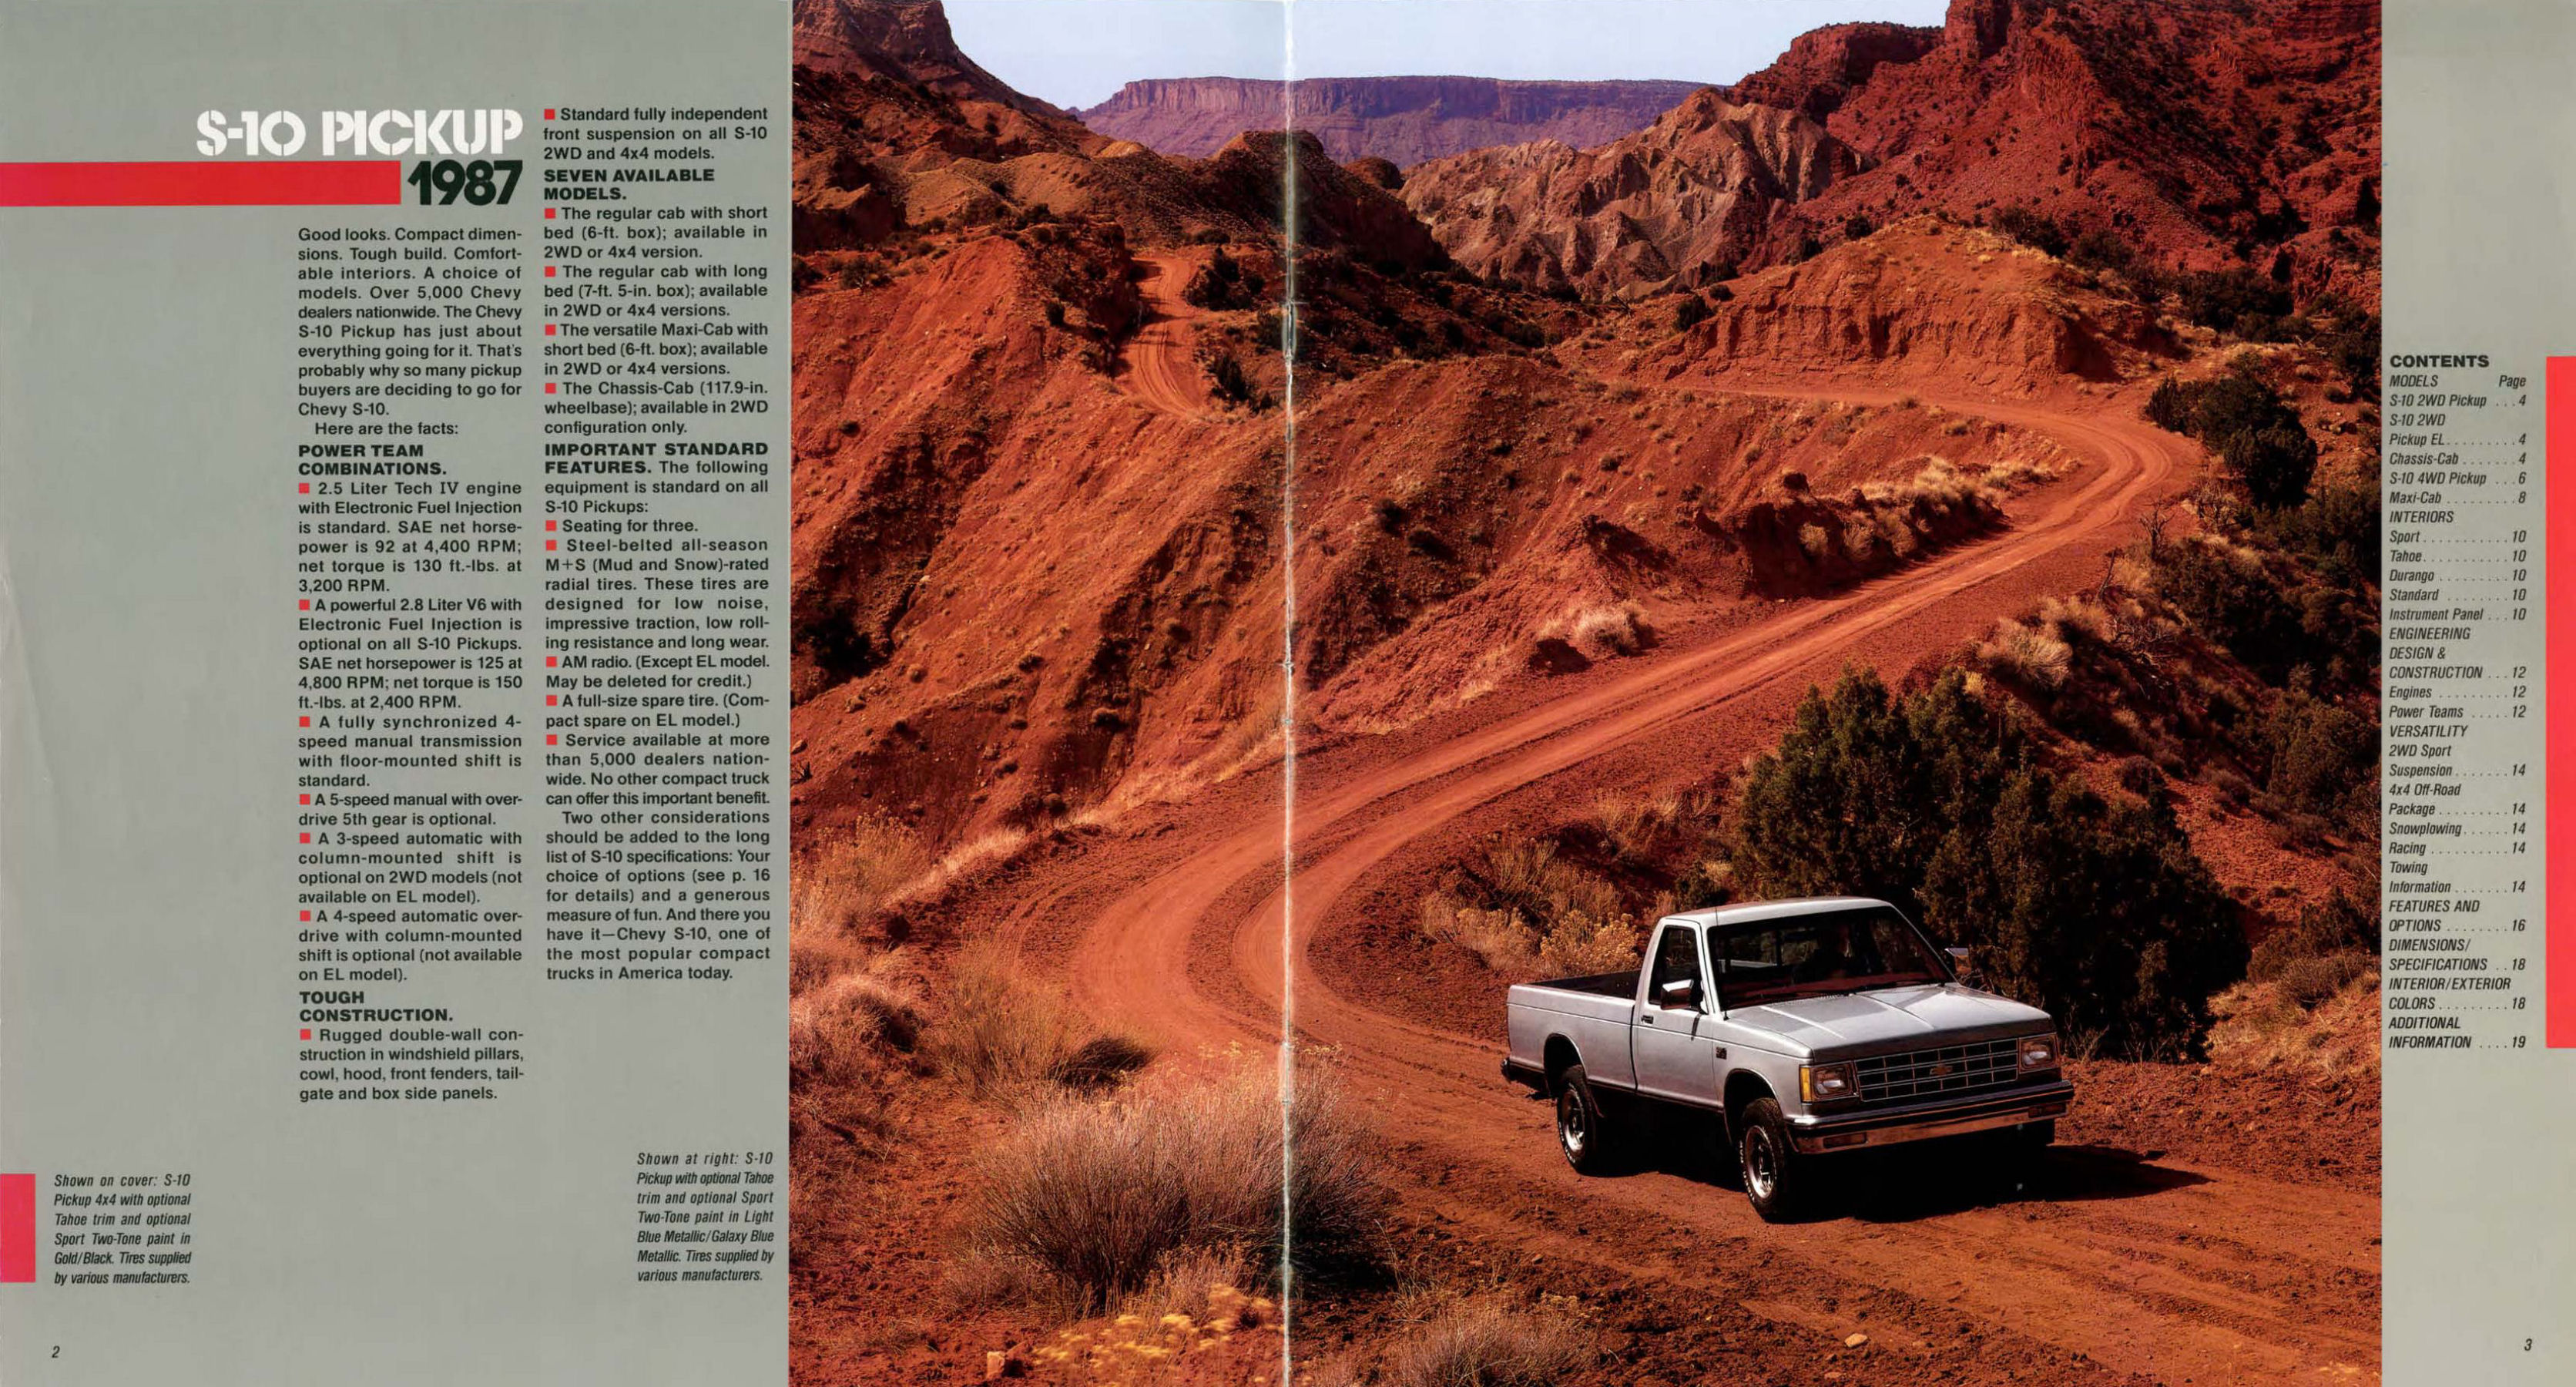 1987 Chevrolet S-10 Pickup-02-03